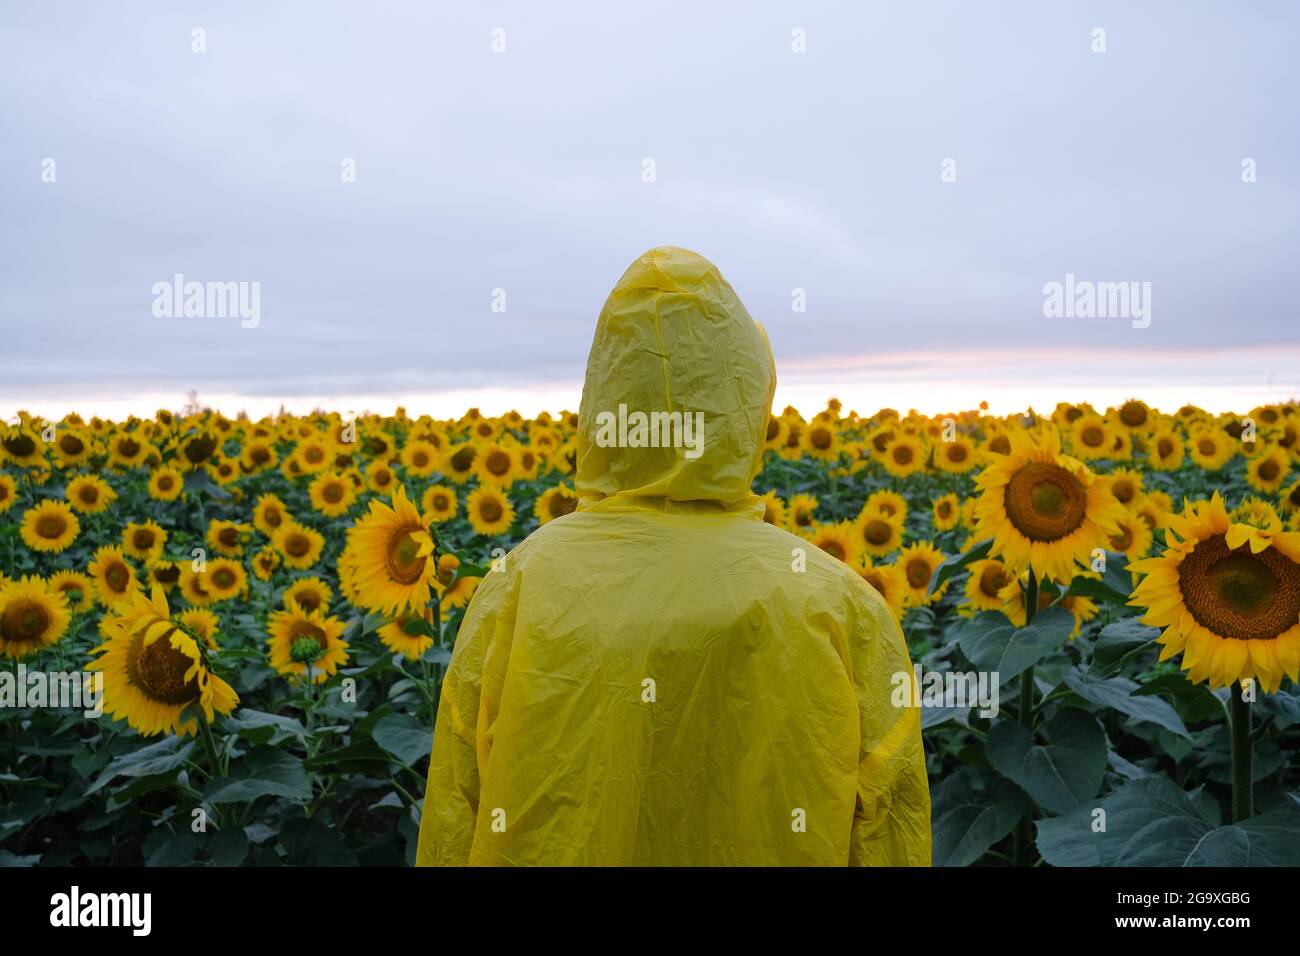 Mensch in gelber Haube Regenmantel im Sonnenblumenfeld stehend. Stockfoto